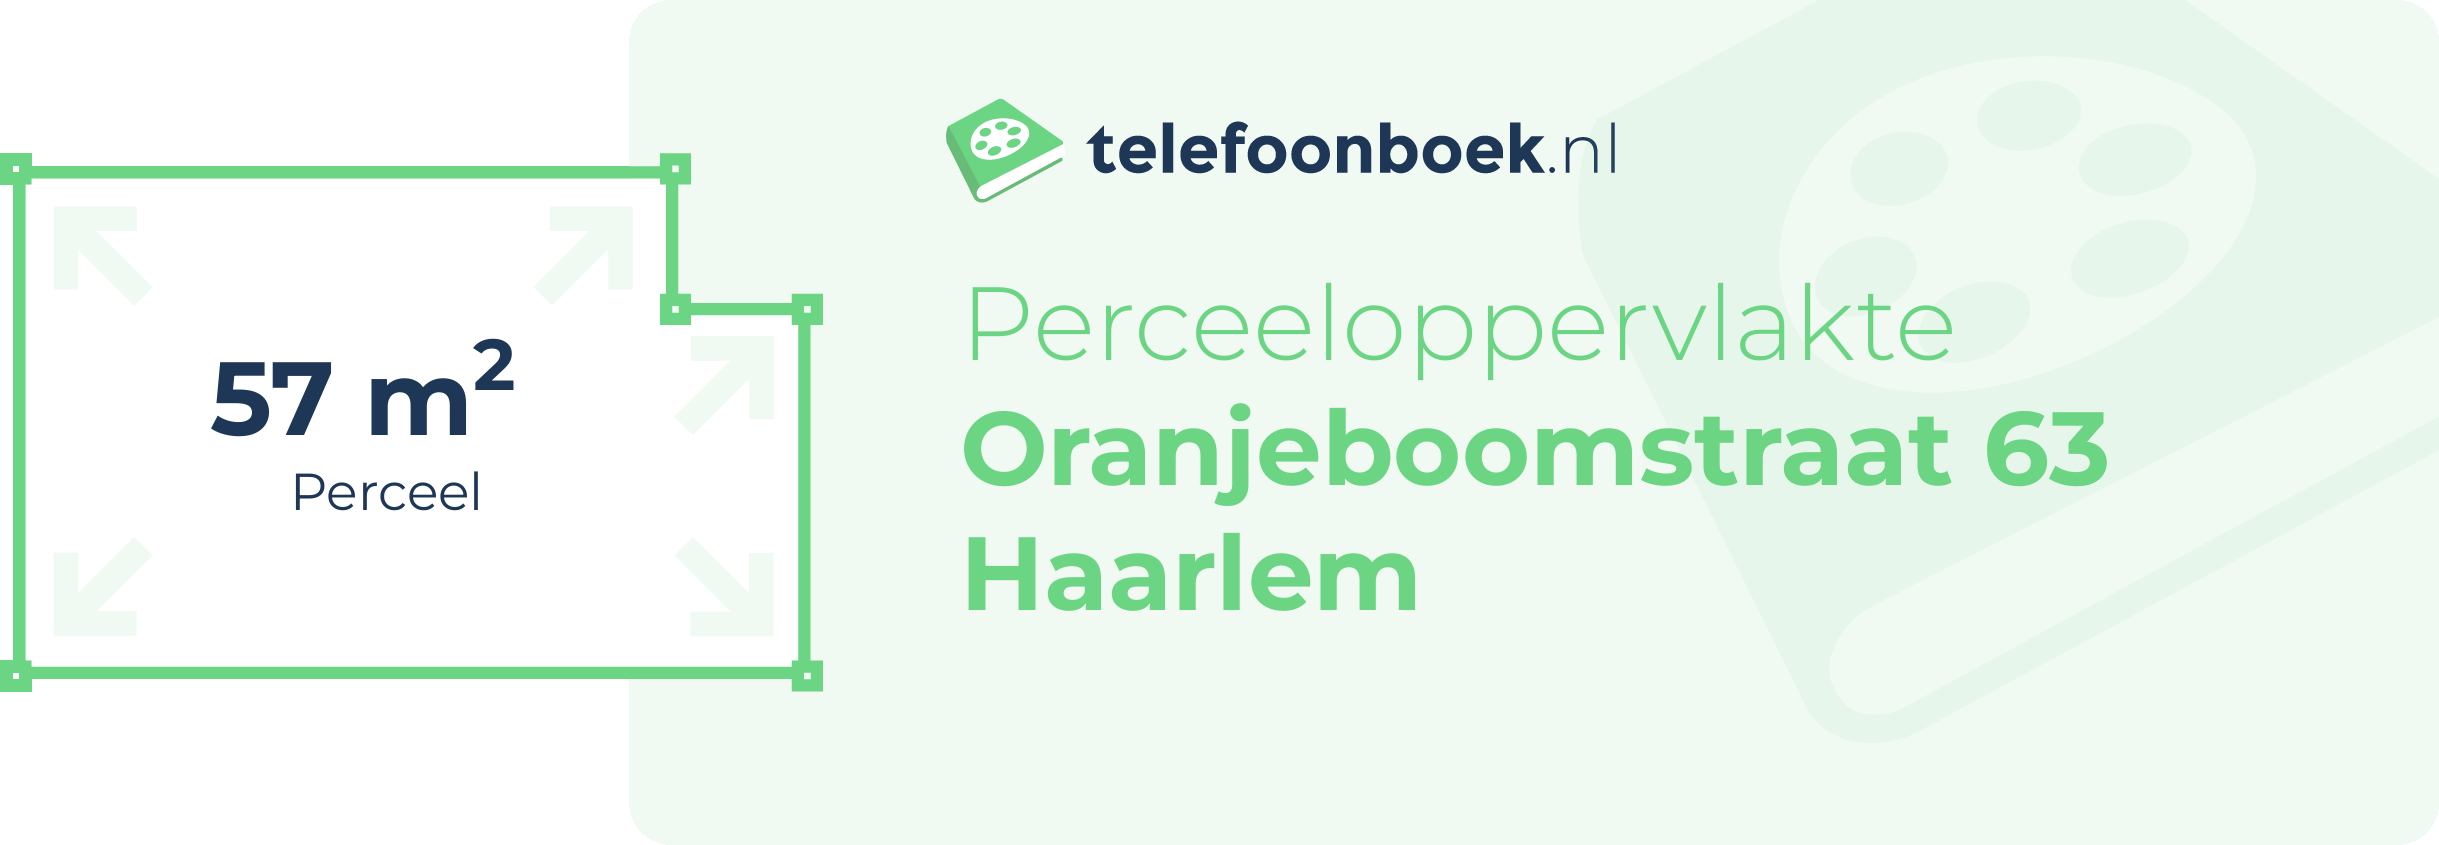 Perceeloppervlakte Oranjeboomstraat 63 Haarlem